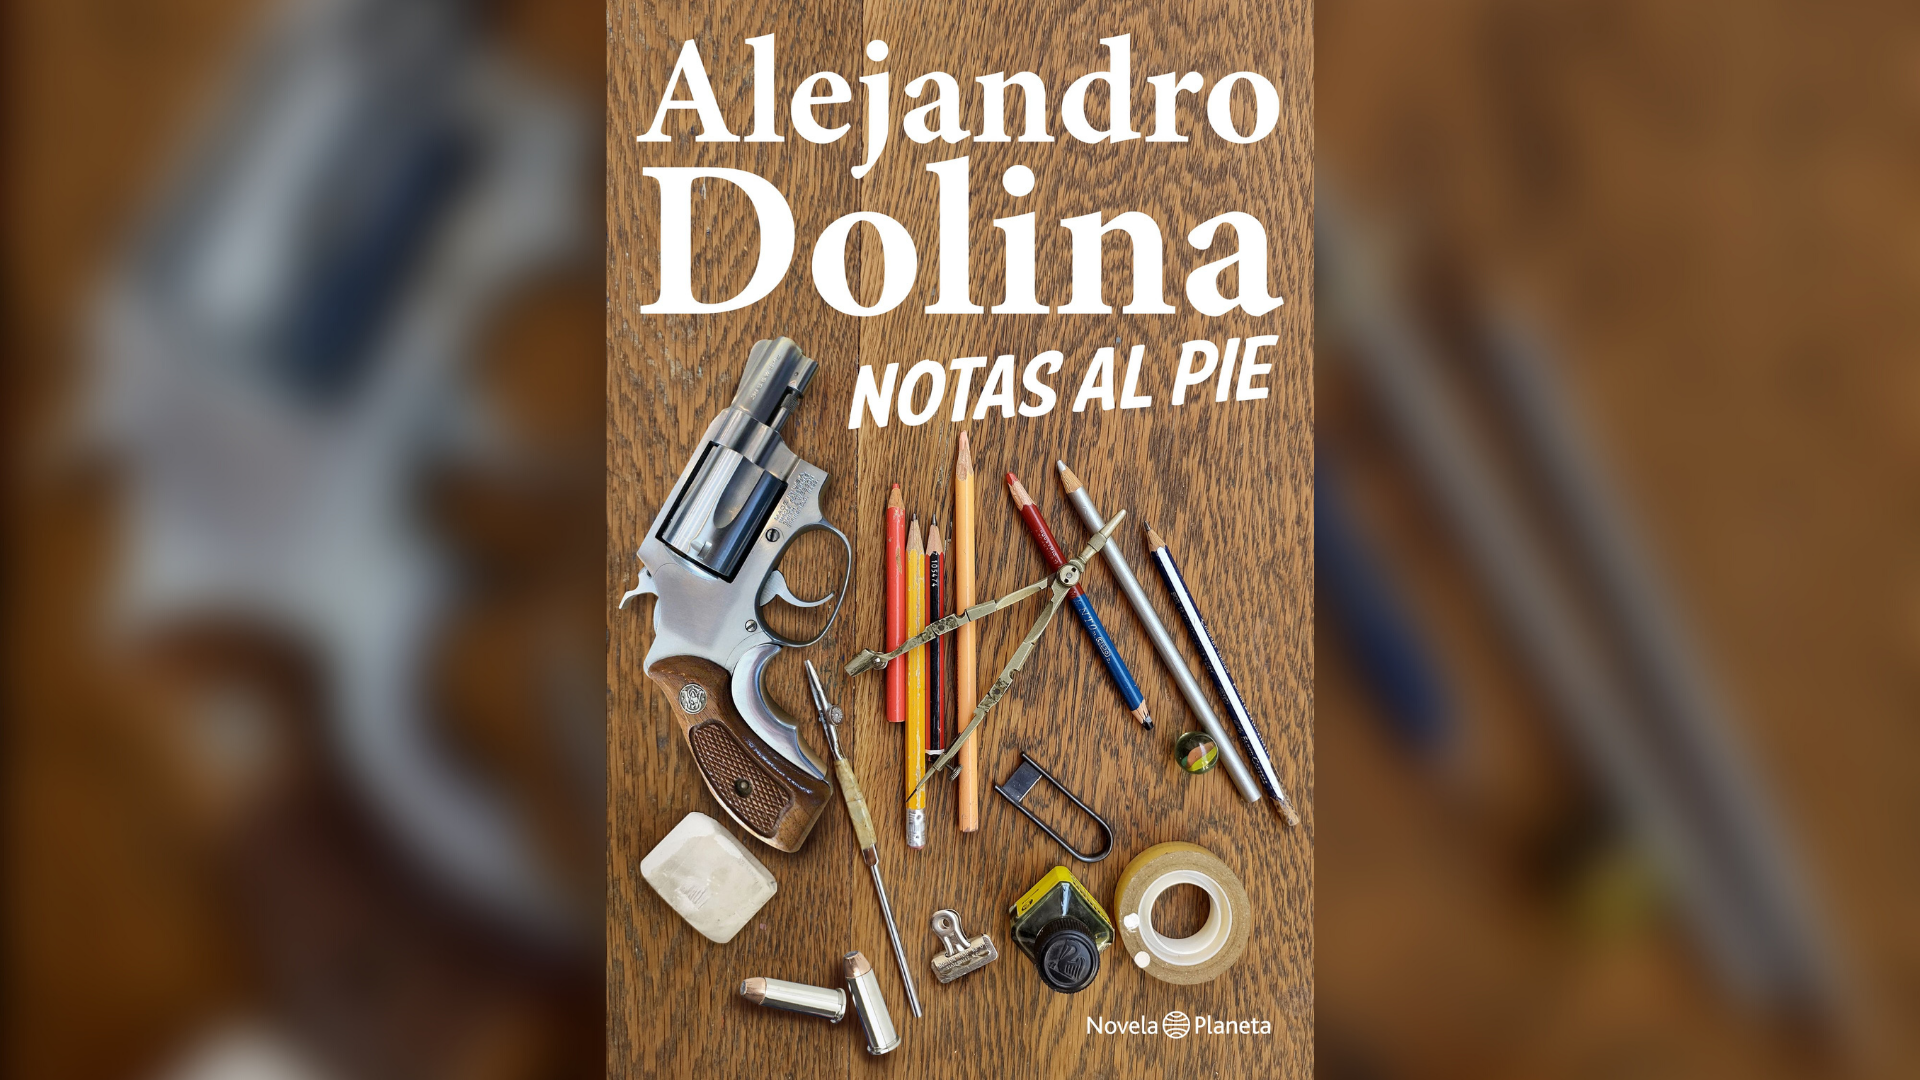 El regreso a la novela de Alejandro Dolina, el hombre que combinó como  nadie “erudición de pizzería”, sabiduría y elegancia - Infobae